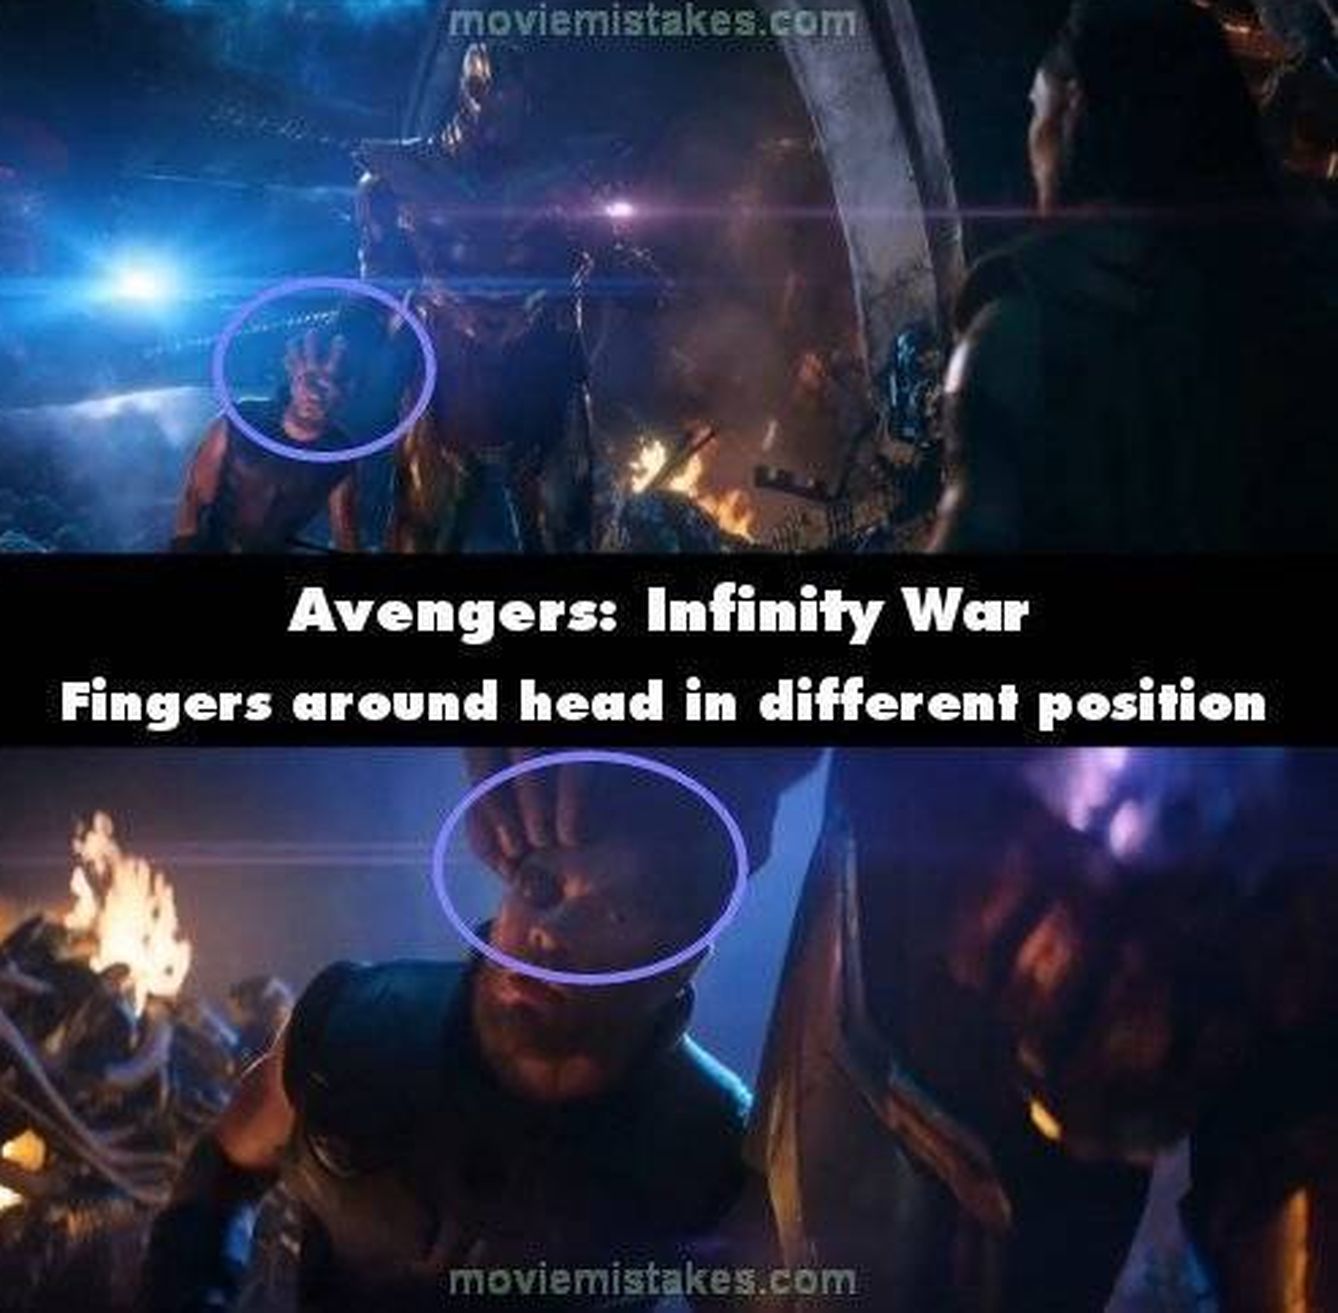 Otro fallo detectado por el portal: la colocación de la mano de Thanos cambia en el siguiente plano.